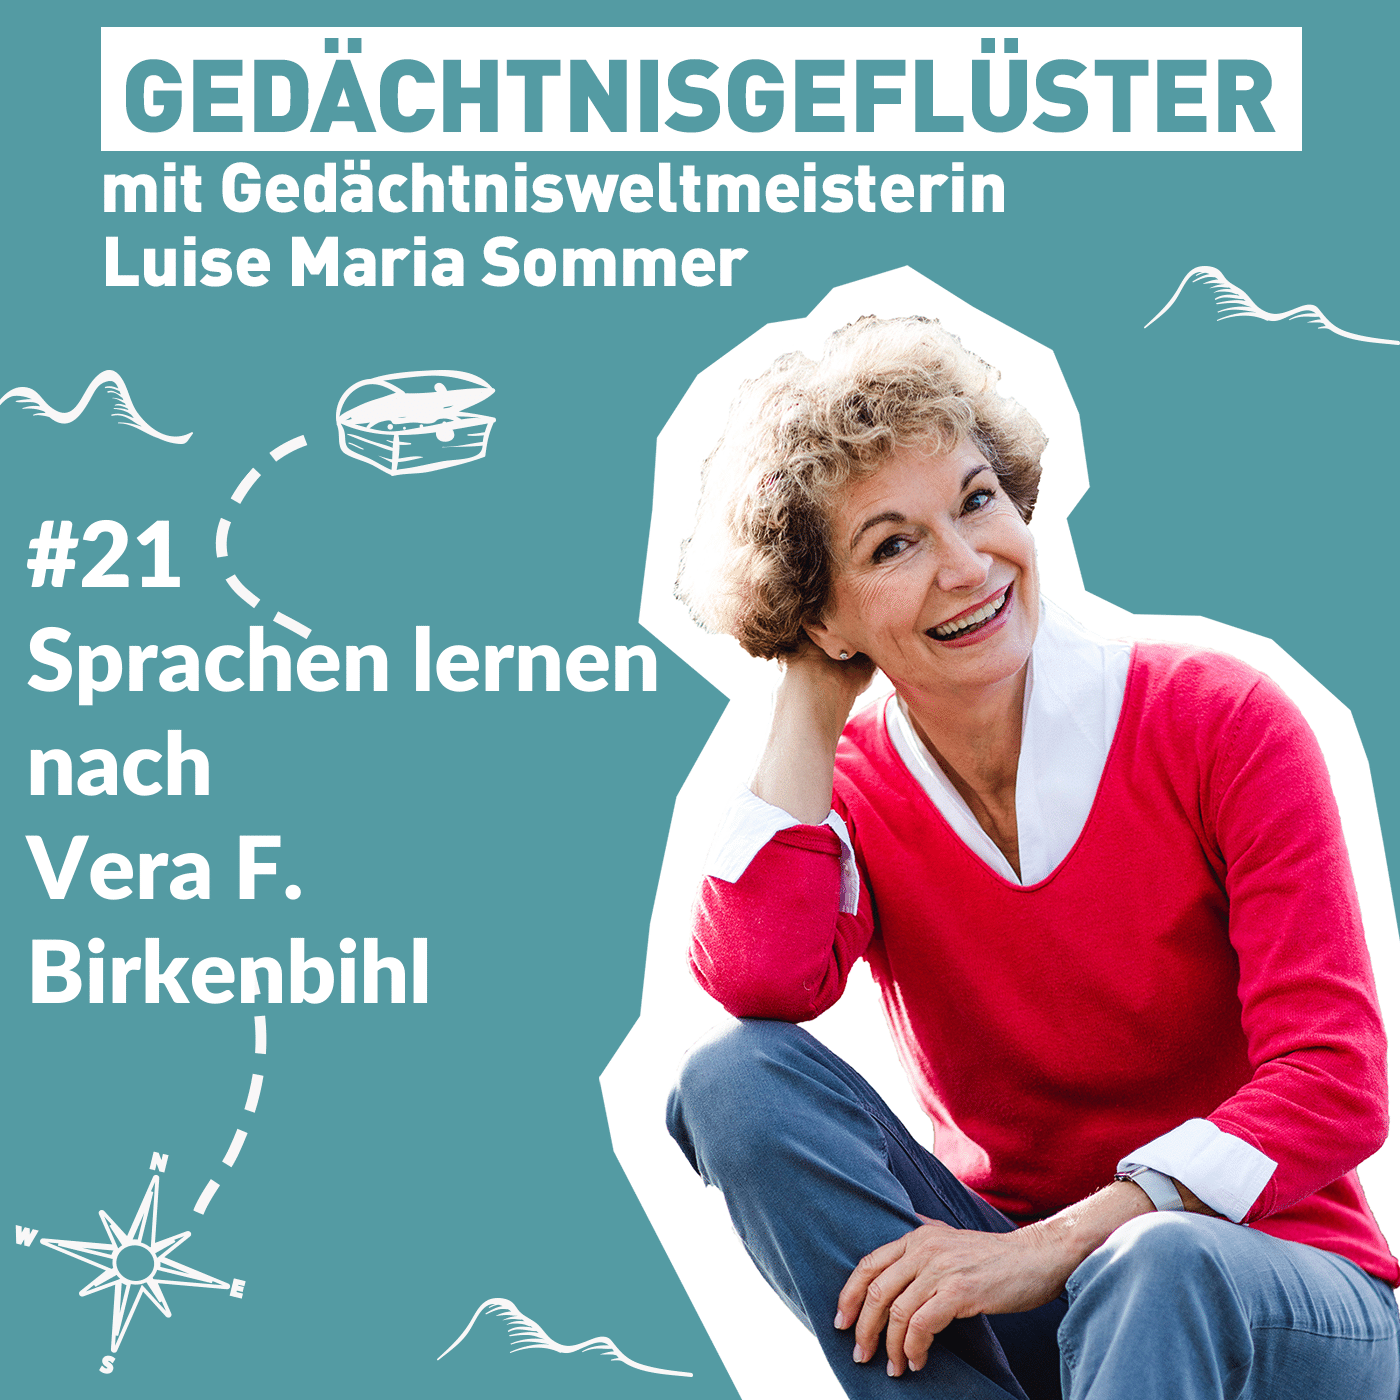 Vera F. Birkenbihl & ihre Sprachlern-Methode – Folge 21